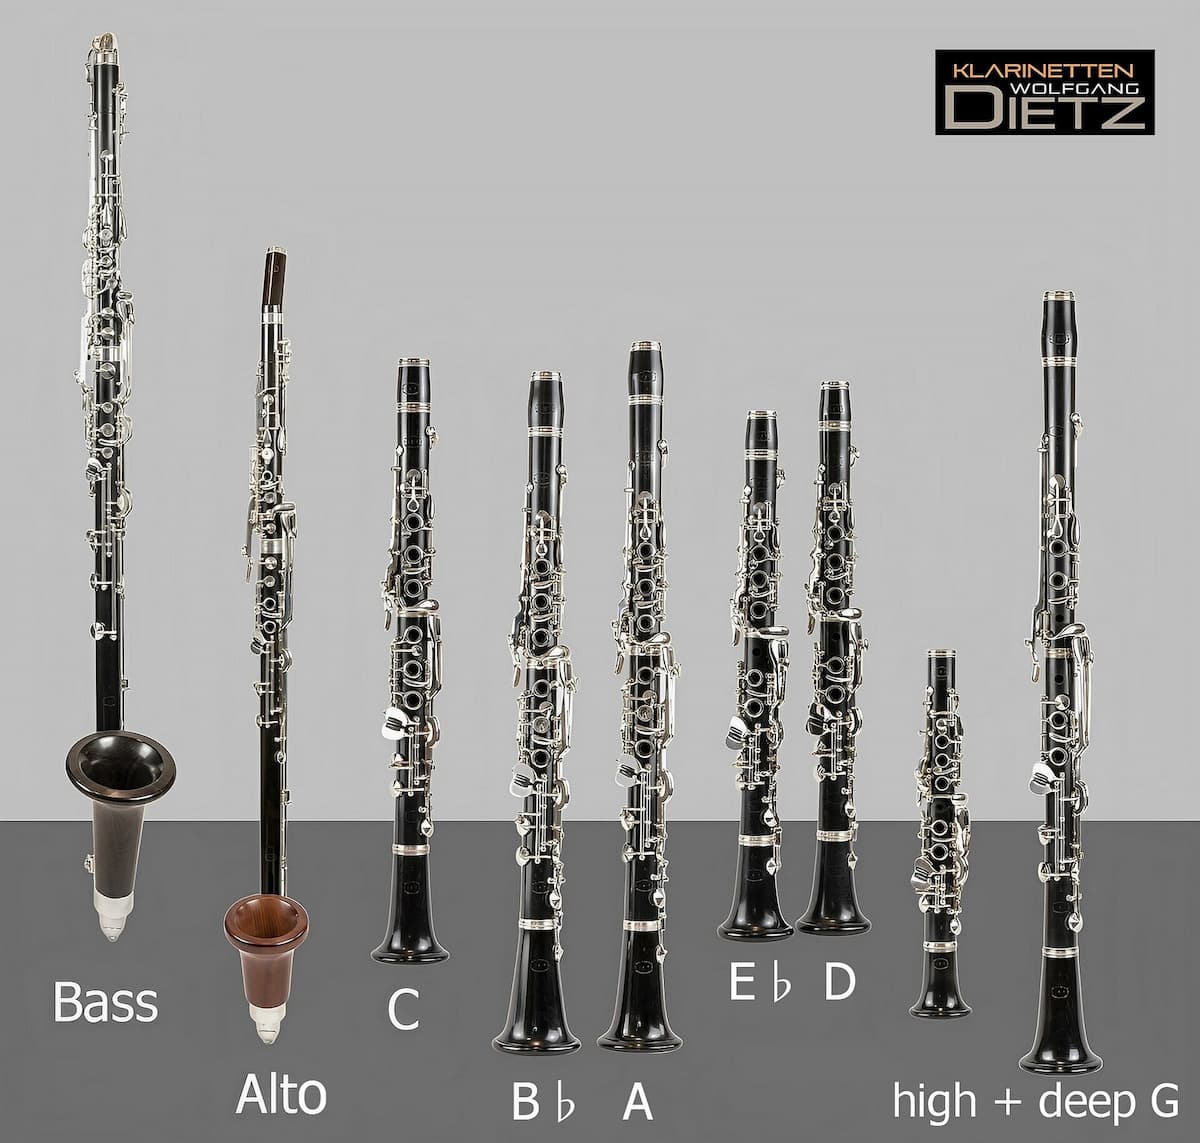 The clarinet family